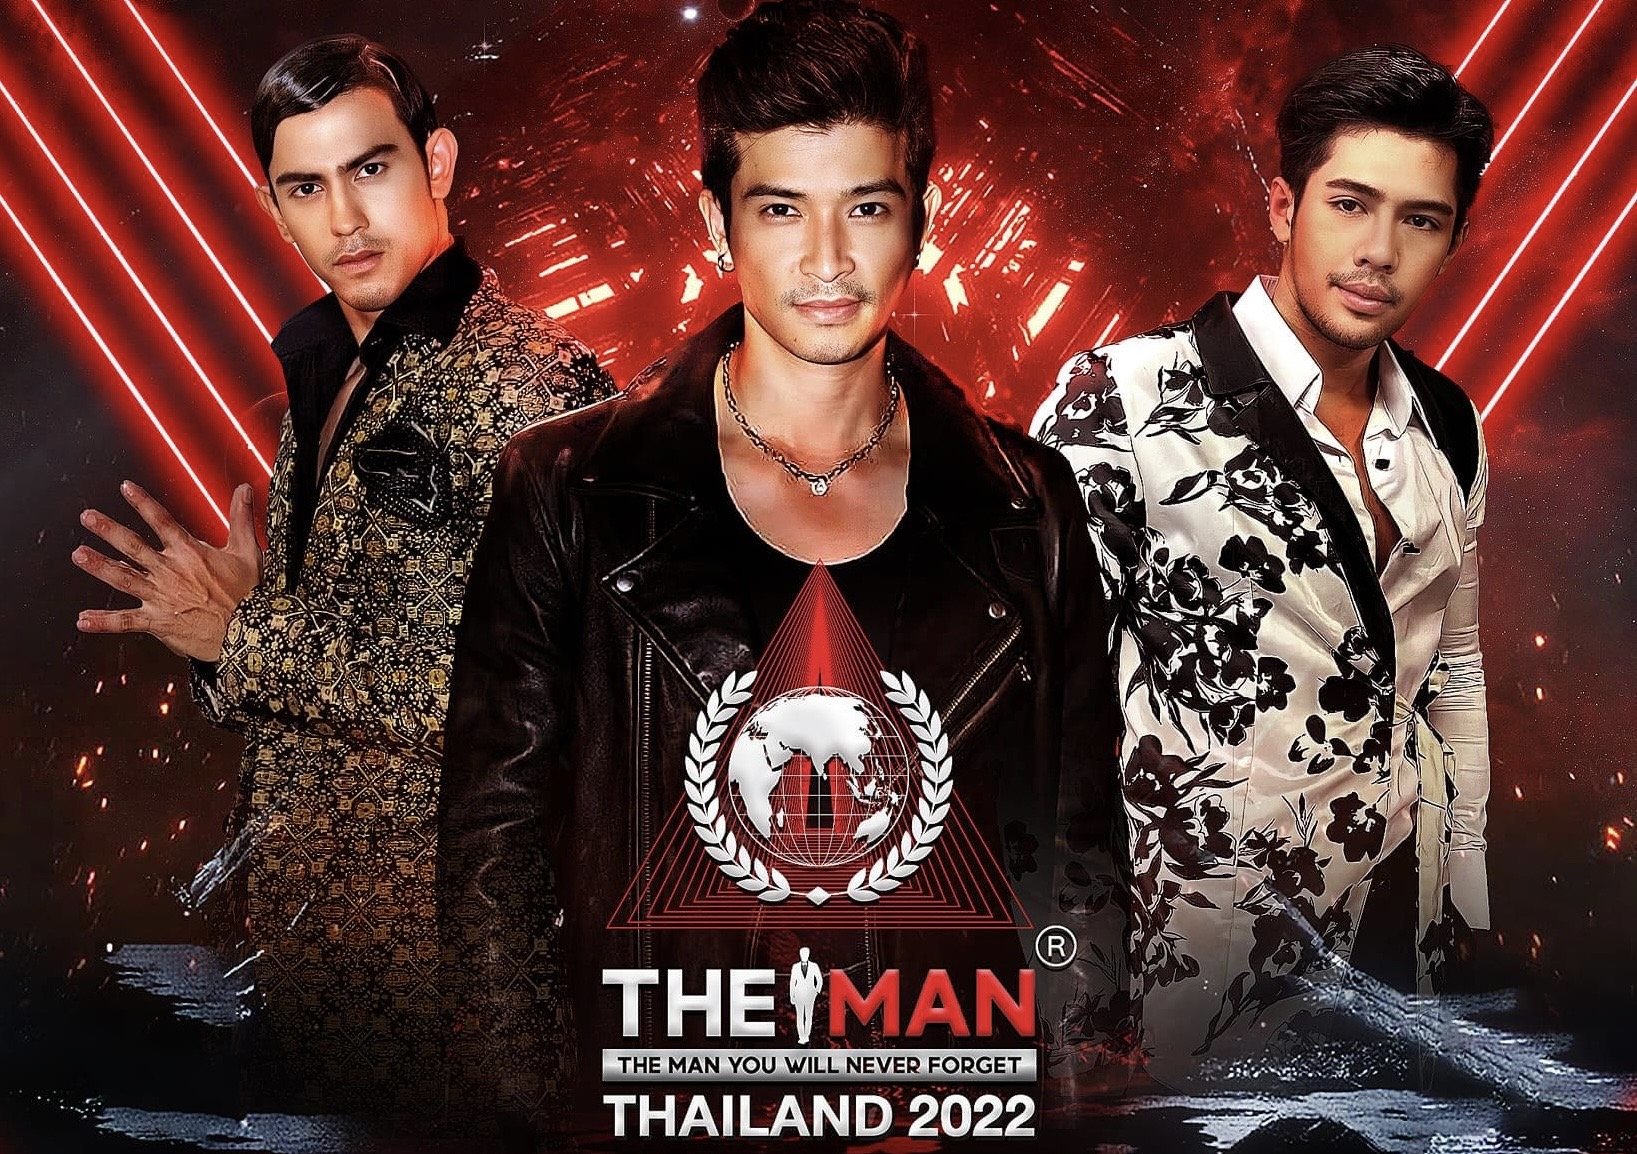 The MAN Thailand 2022 